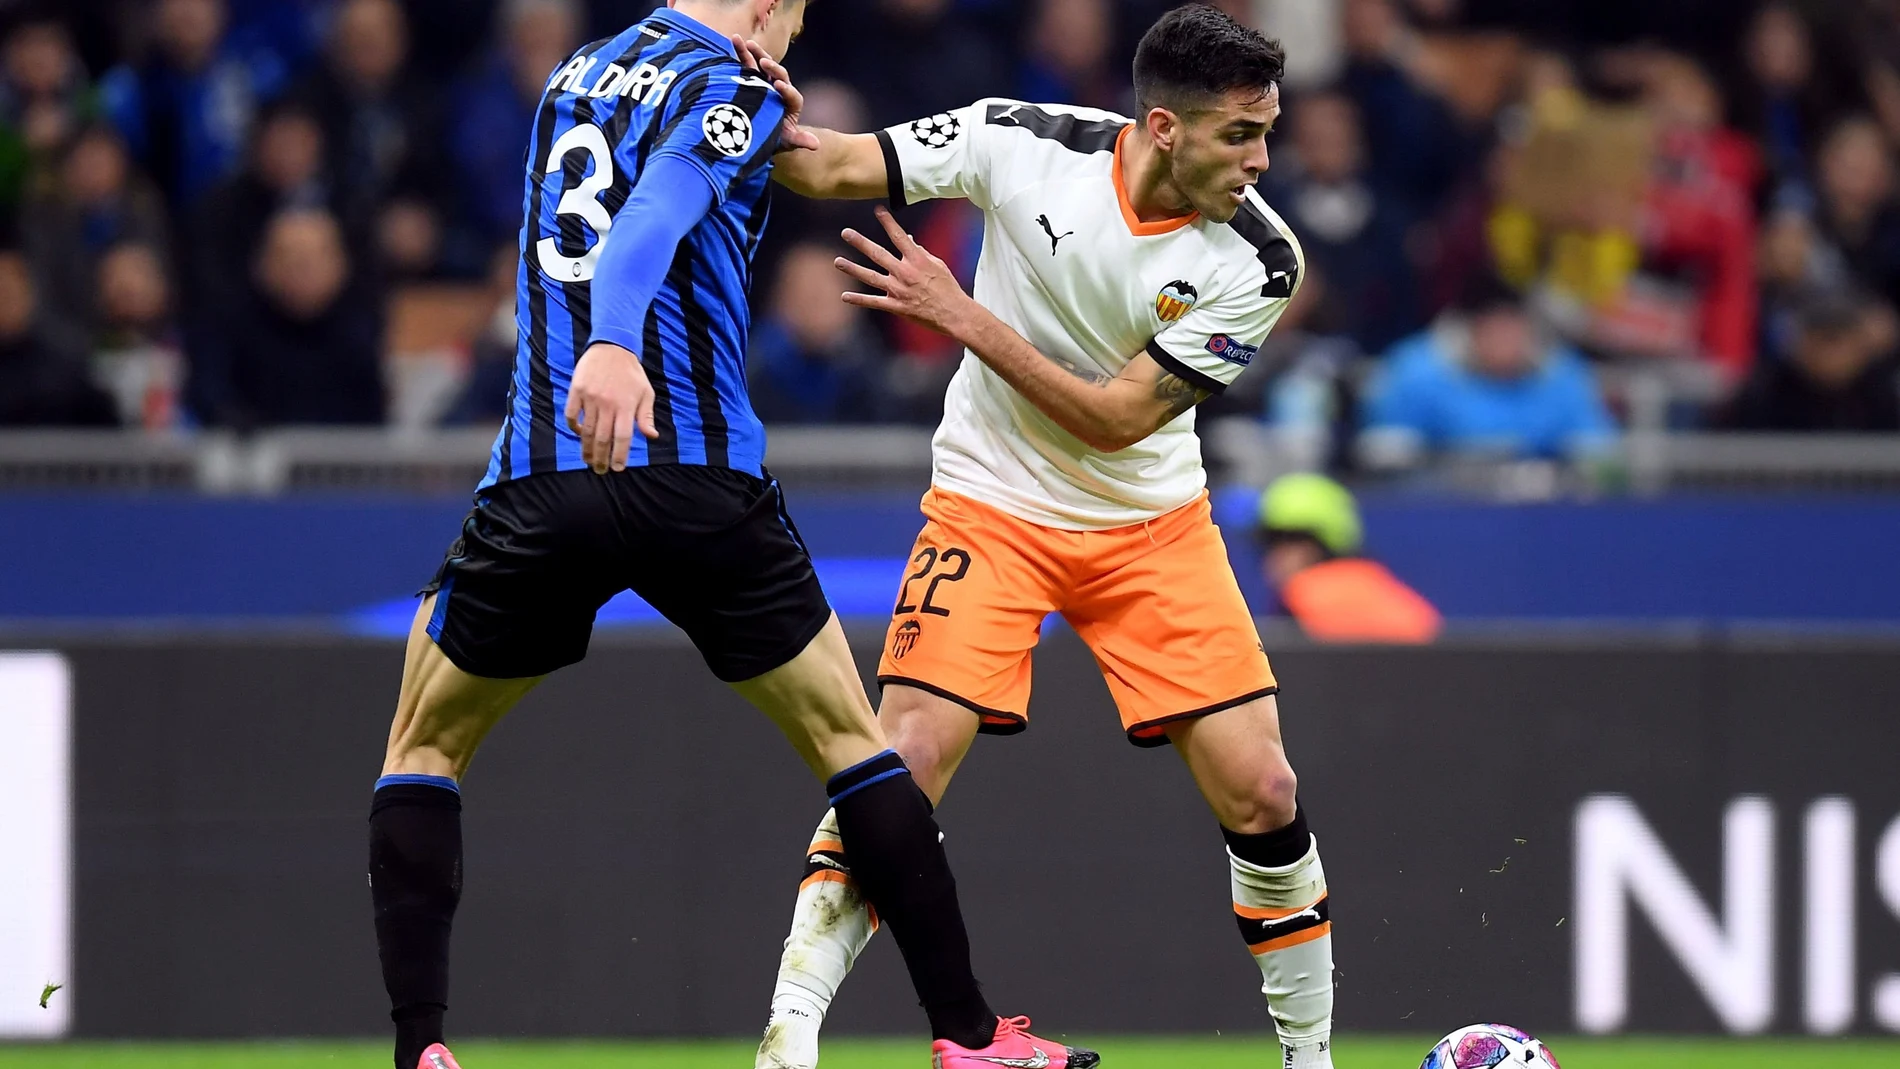 Champions League - Round of 16 First Leg - Atalanta v Valencia